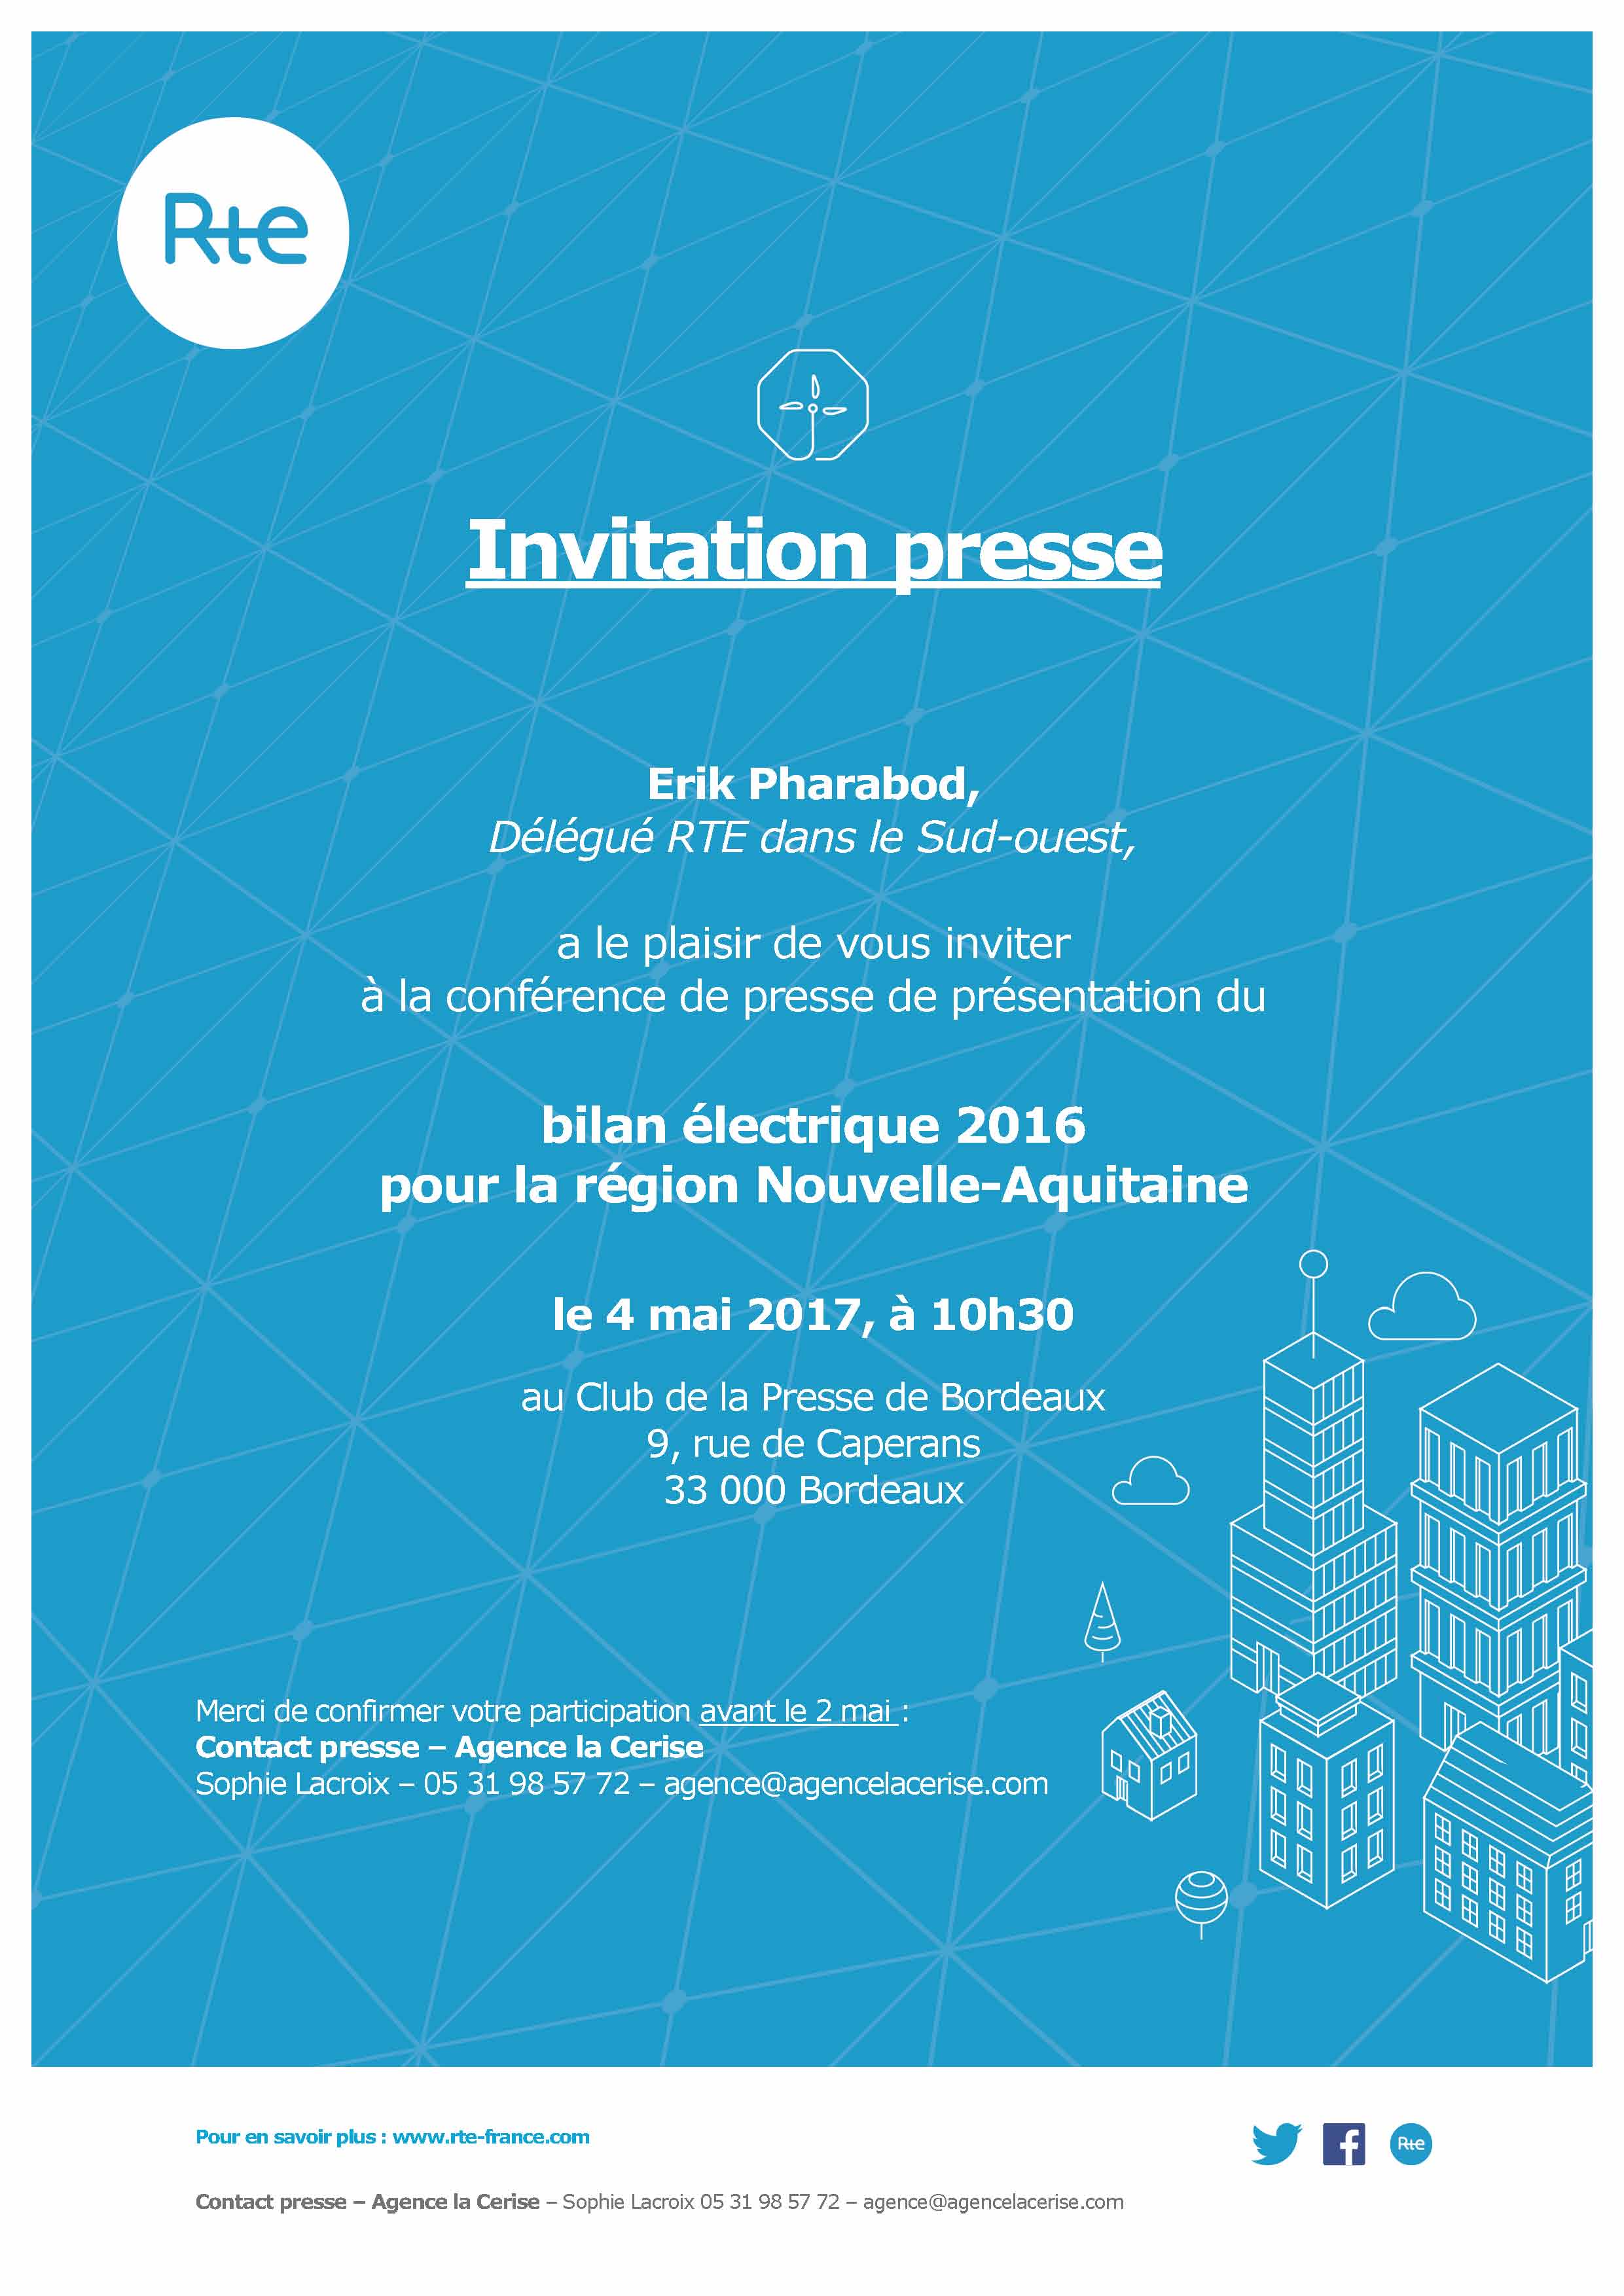 1705-invitation-presse-bilan-electrique-2016-na-rte